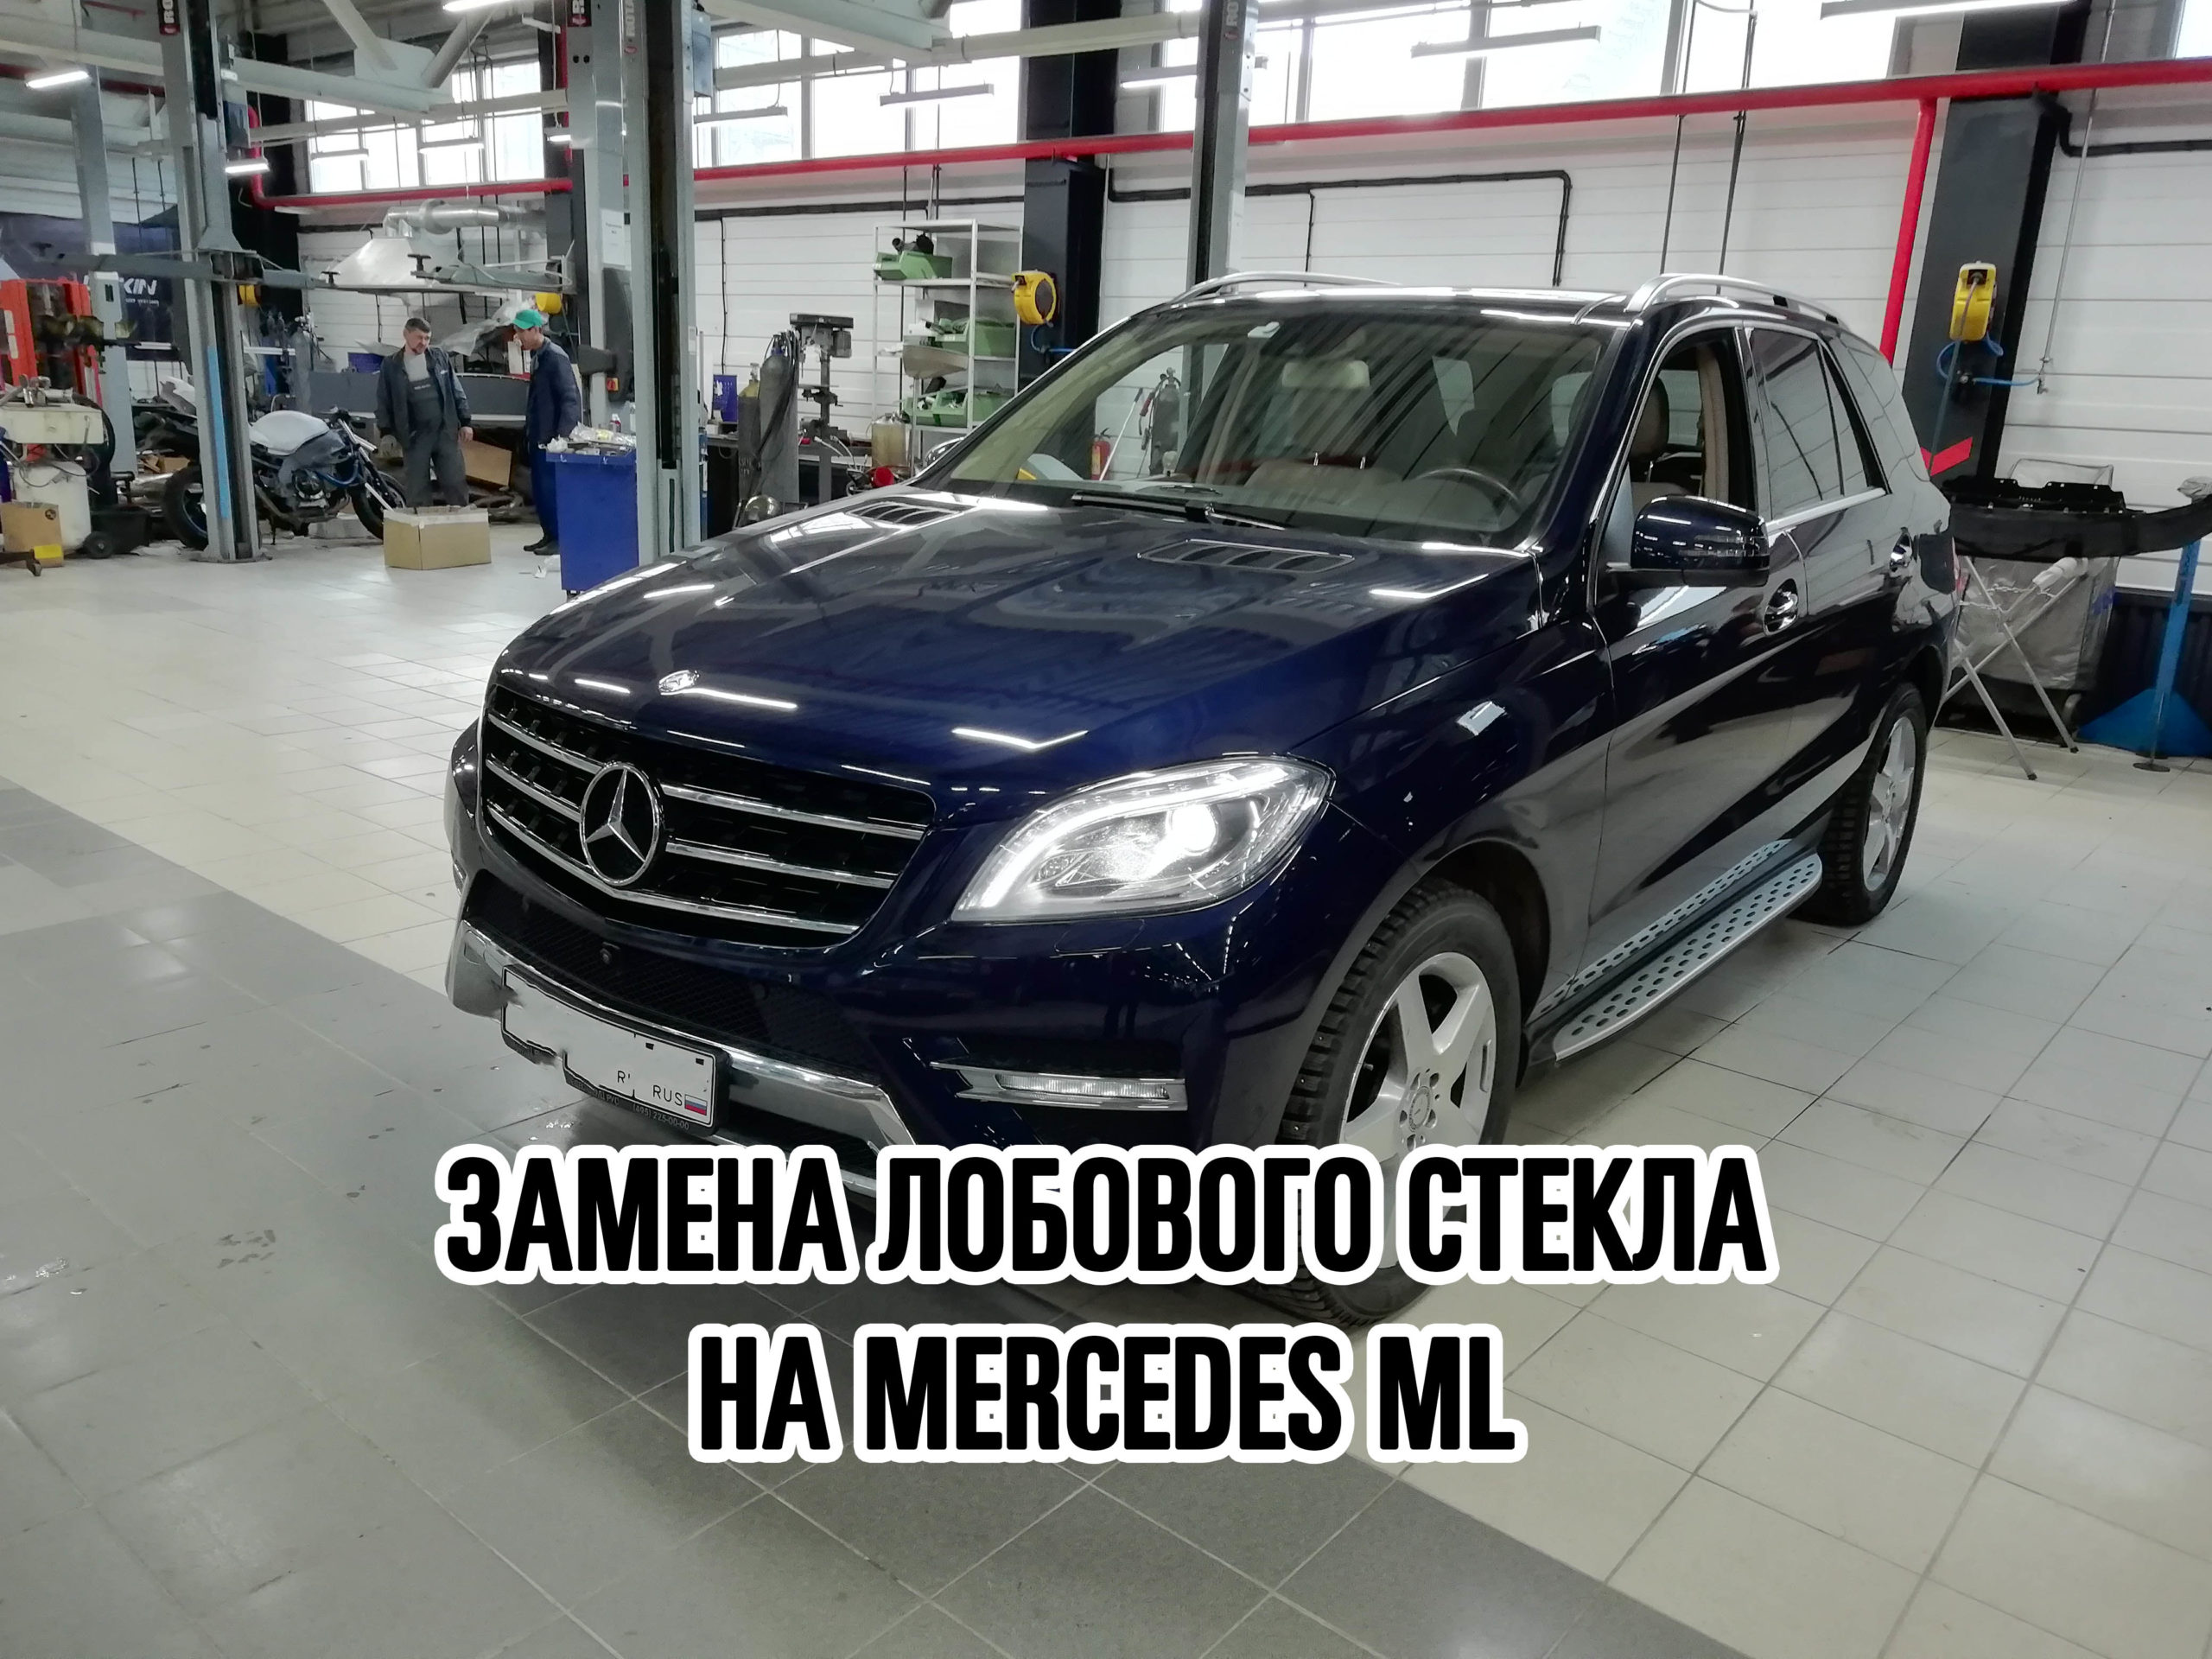 Лобовое стекло на Mercedes ML купить и установить в Москве